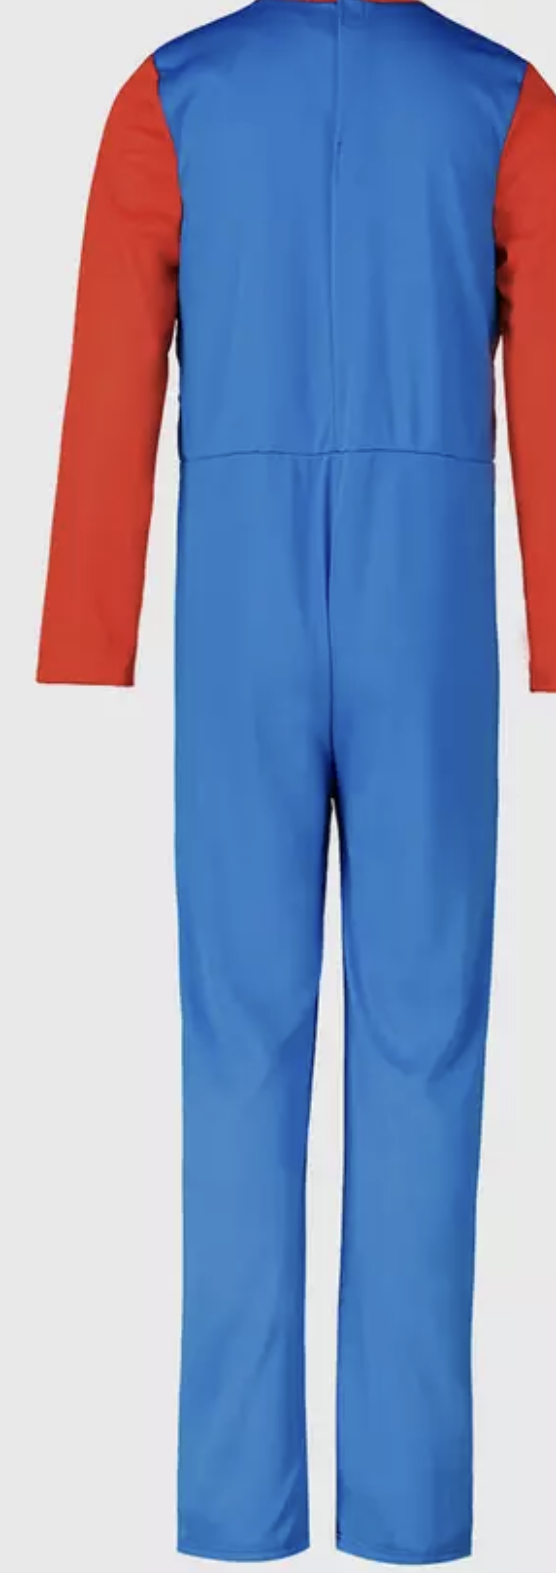 Super Mario costume